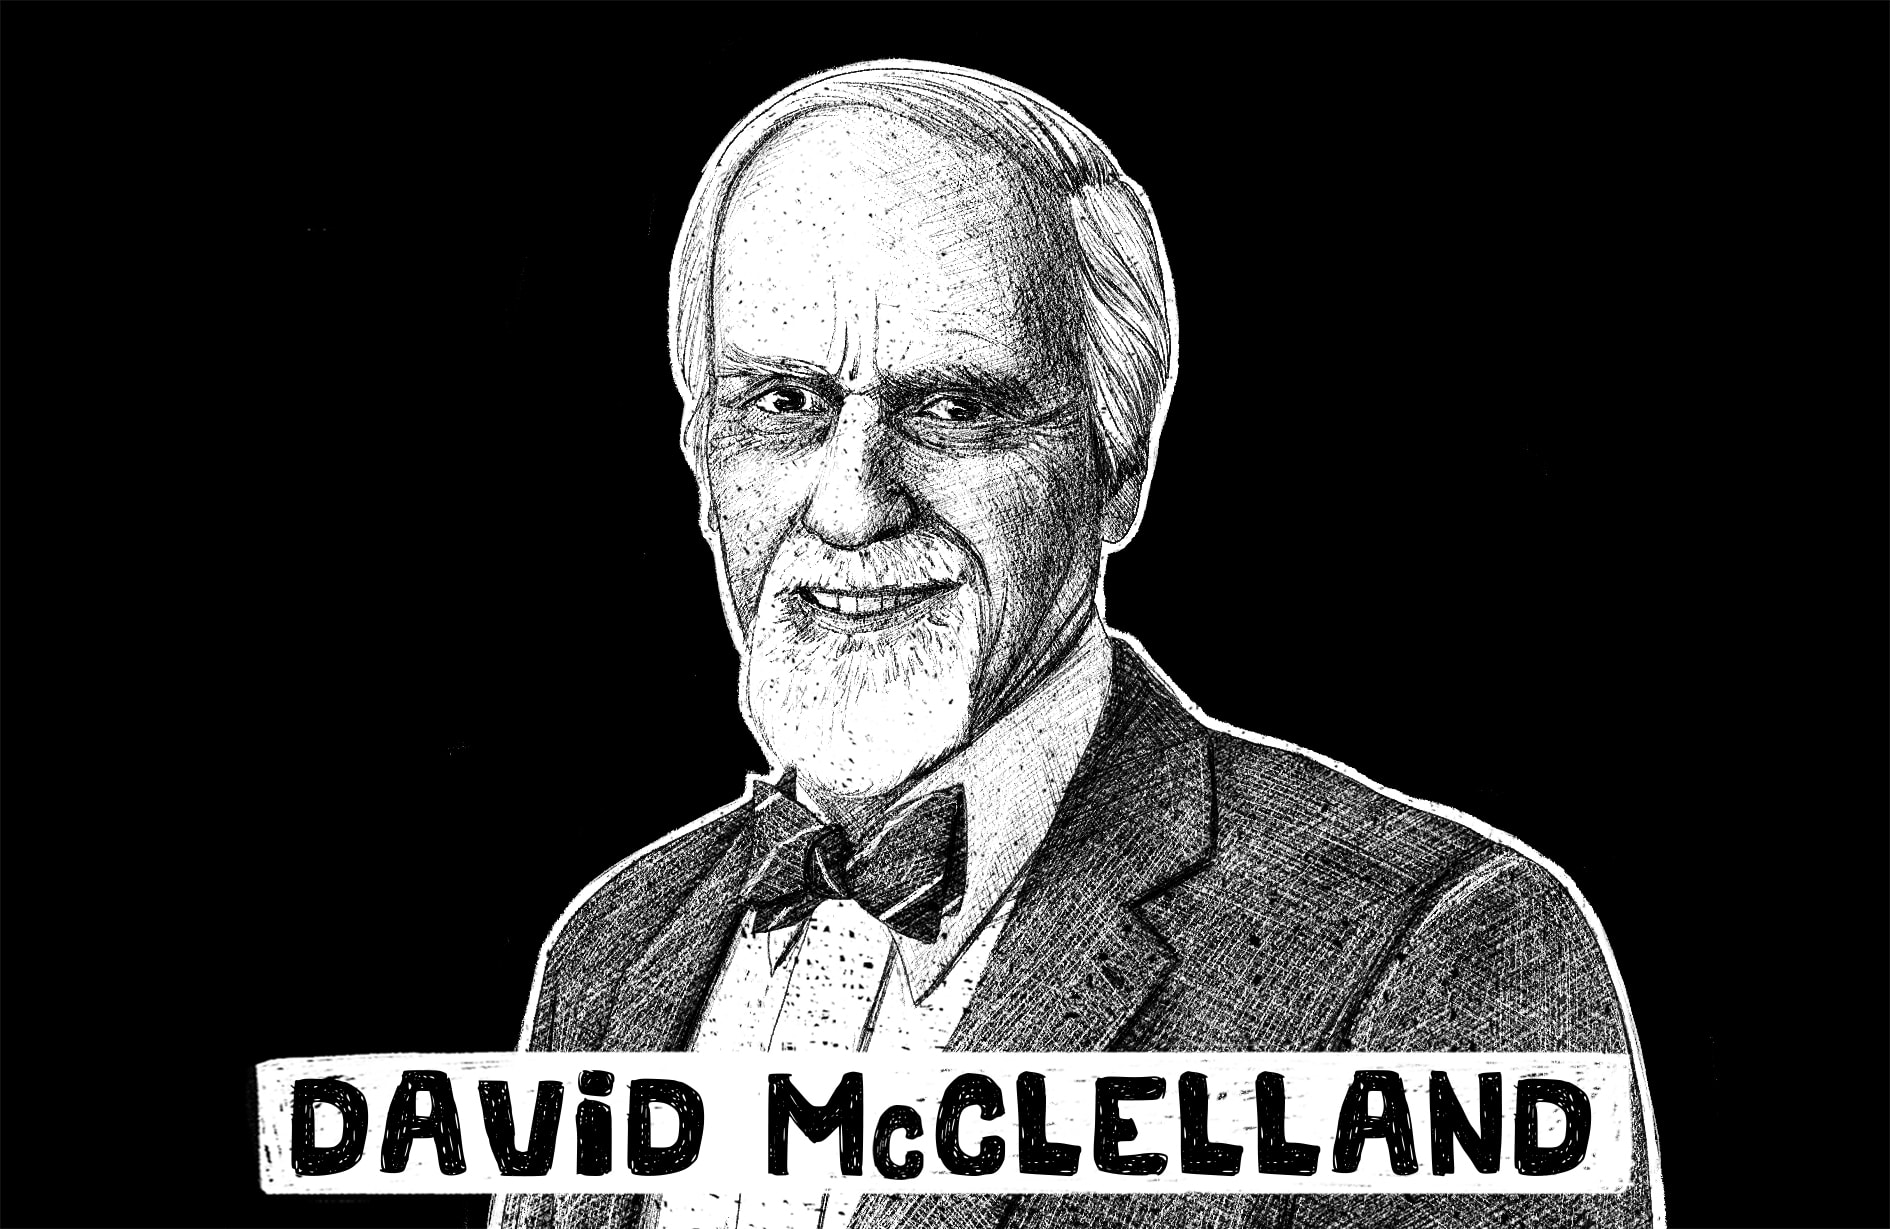 David McClelland